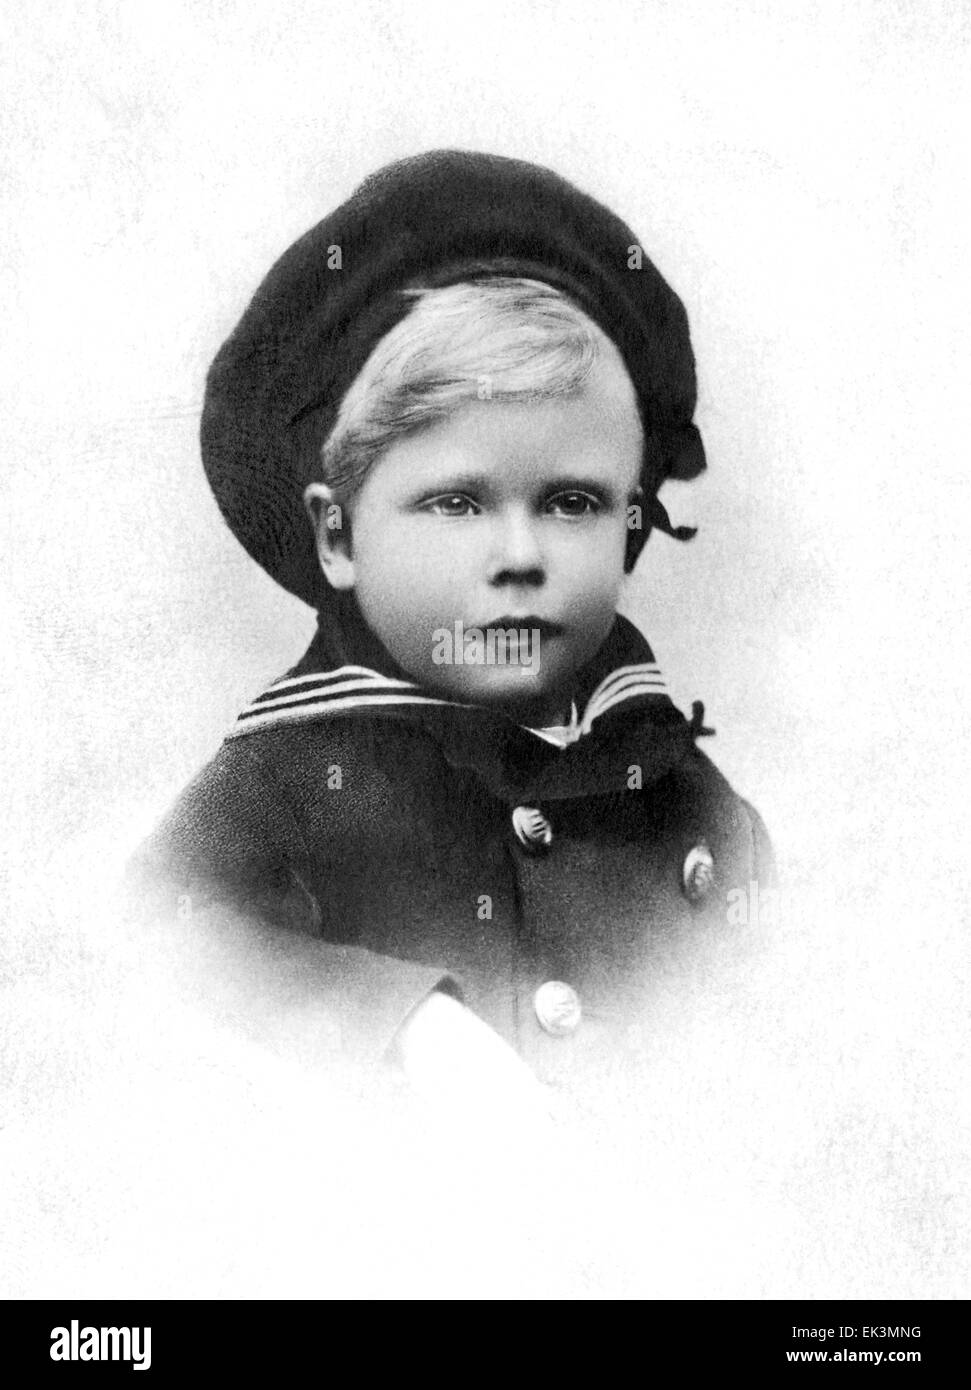 König Edward VIII des Vereinigten Königreichs, als Prinz von Wales, ca. 1896 Stockfoto